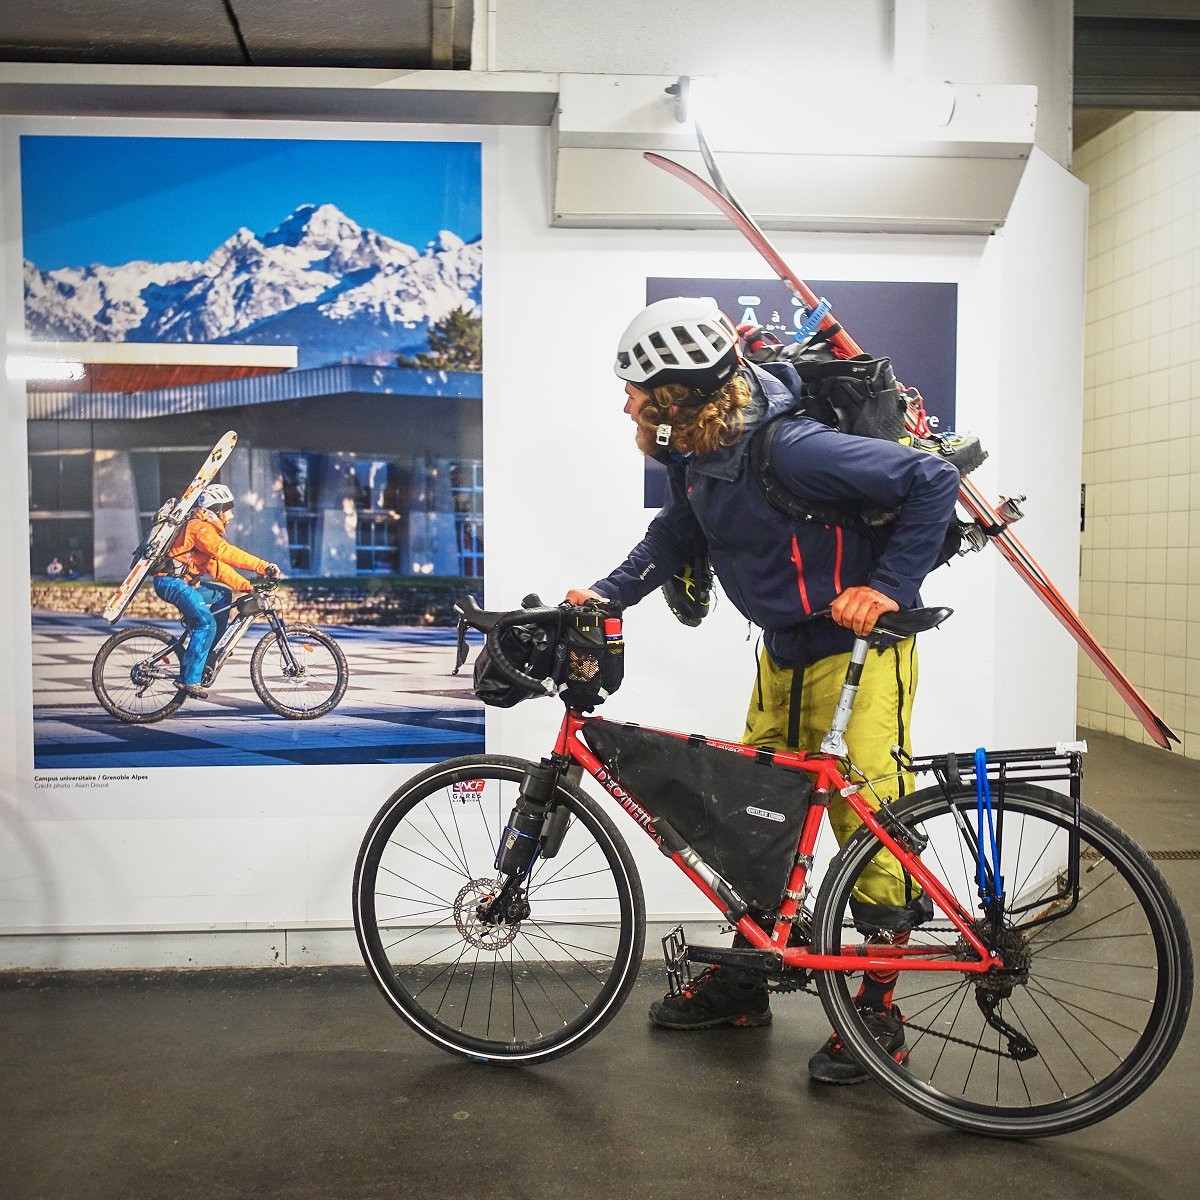 Promotion du vélo-ski en gare de Grenoble (dommage qu'il soit électrique, mais c'est une autre histoire). 